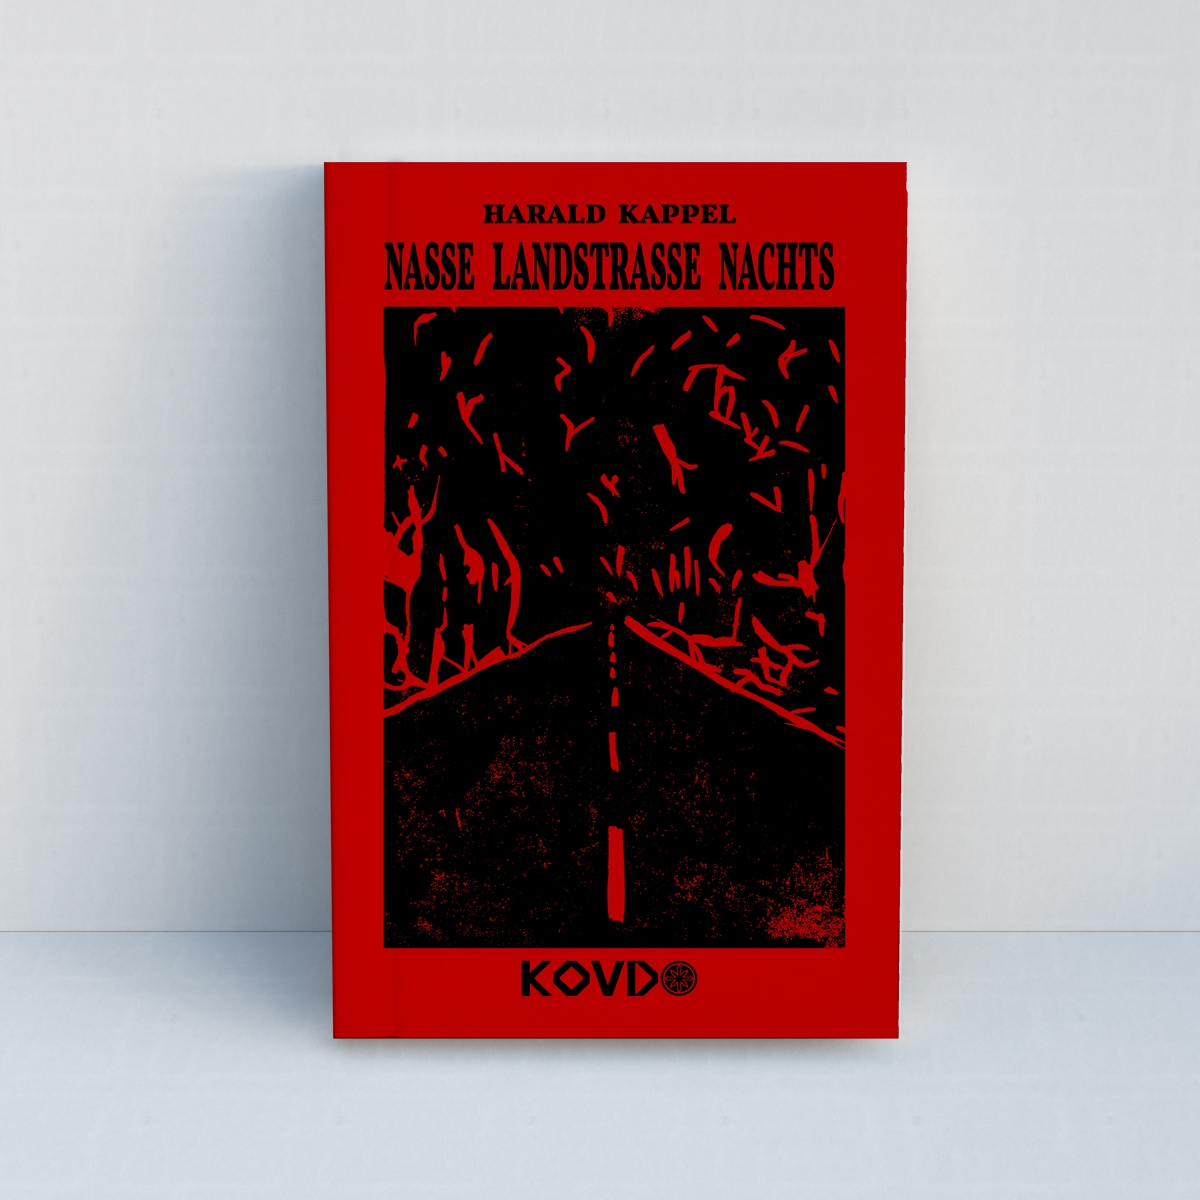 Nasse Landstrasse nachts von Harald Kappel - Linoldruck Edition